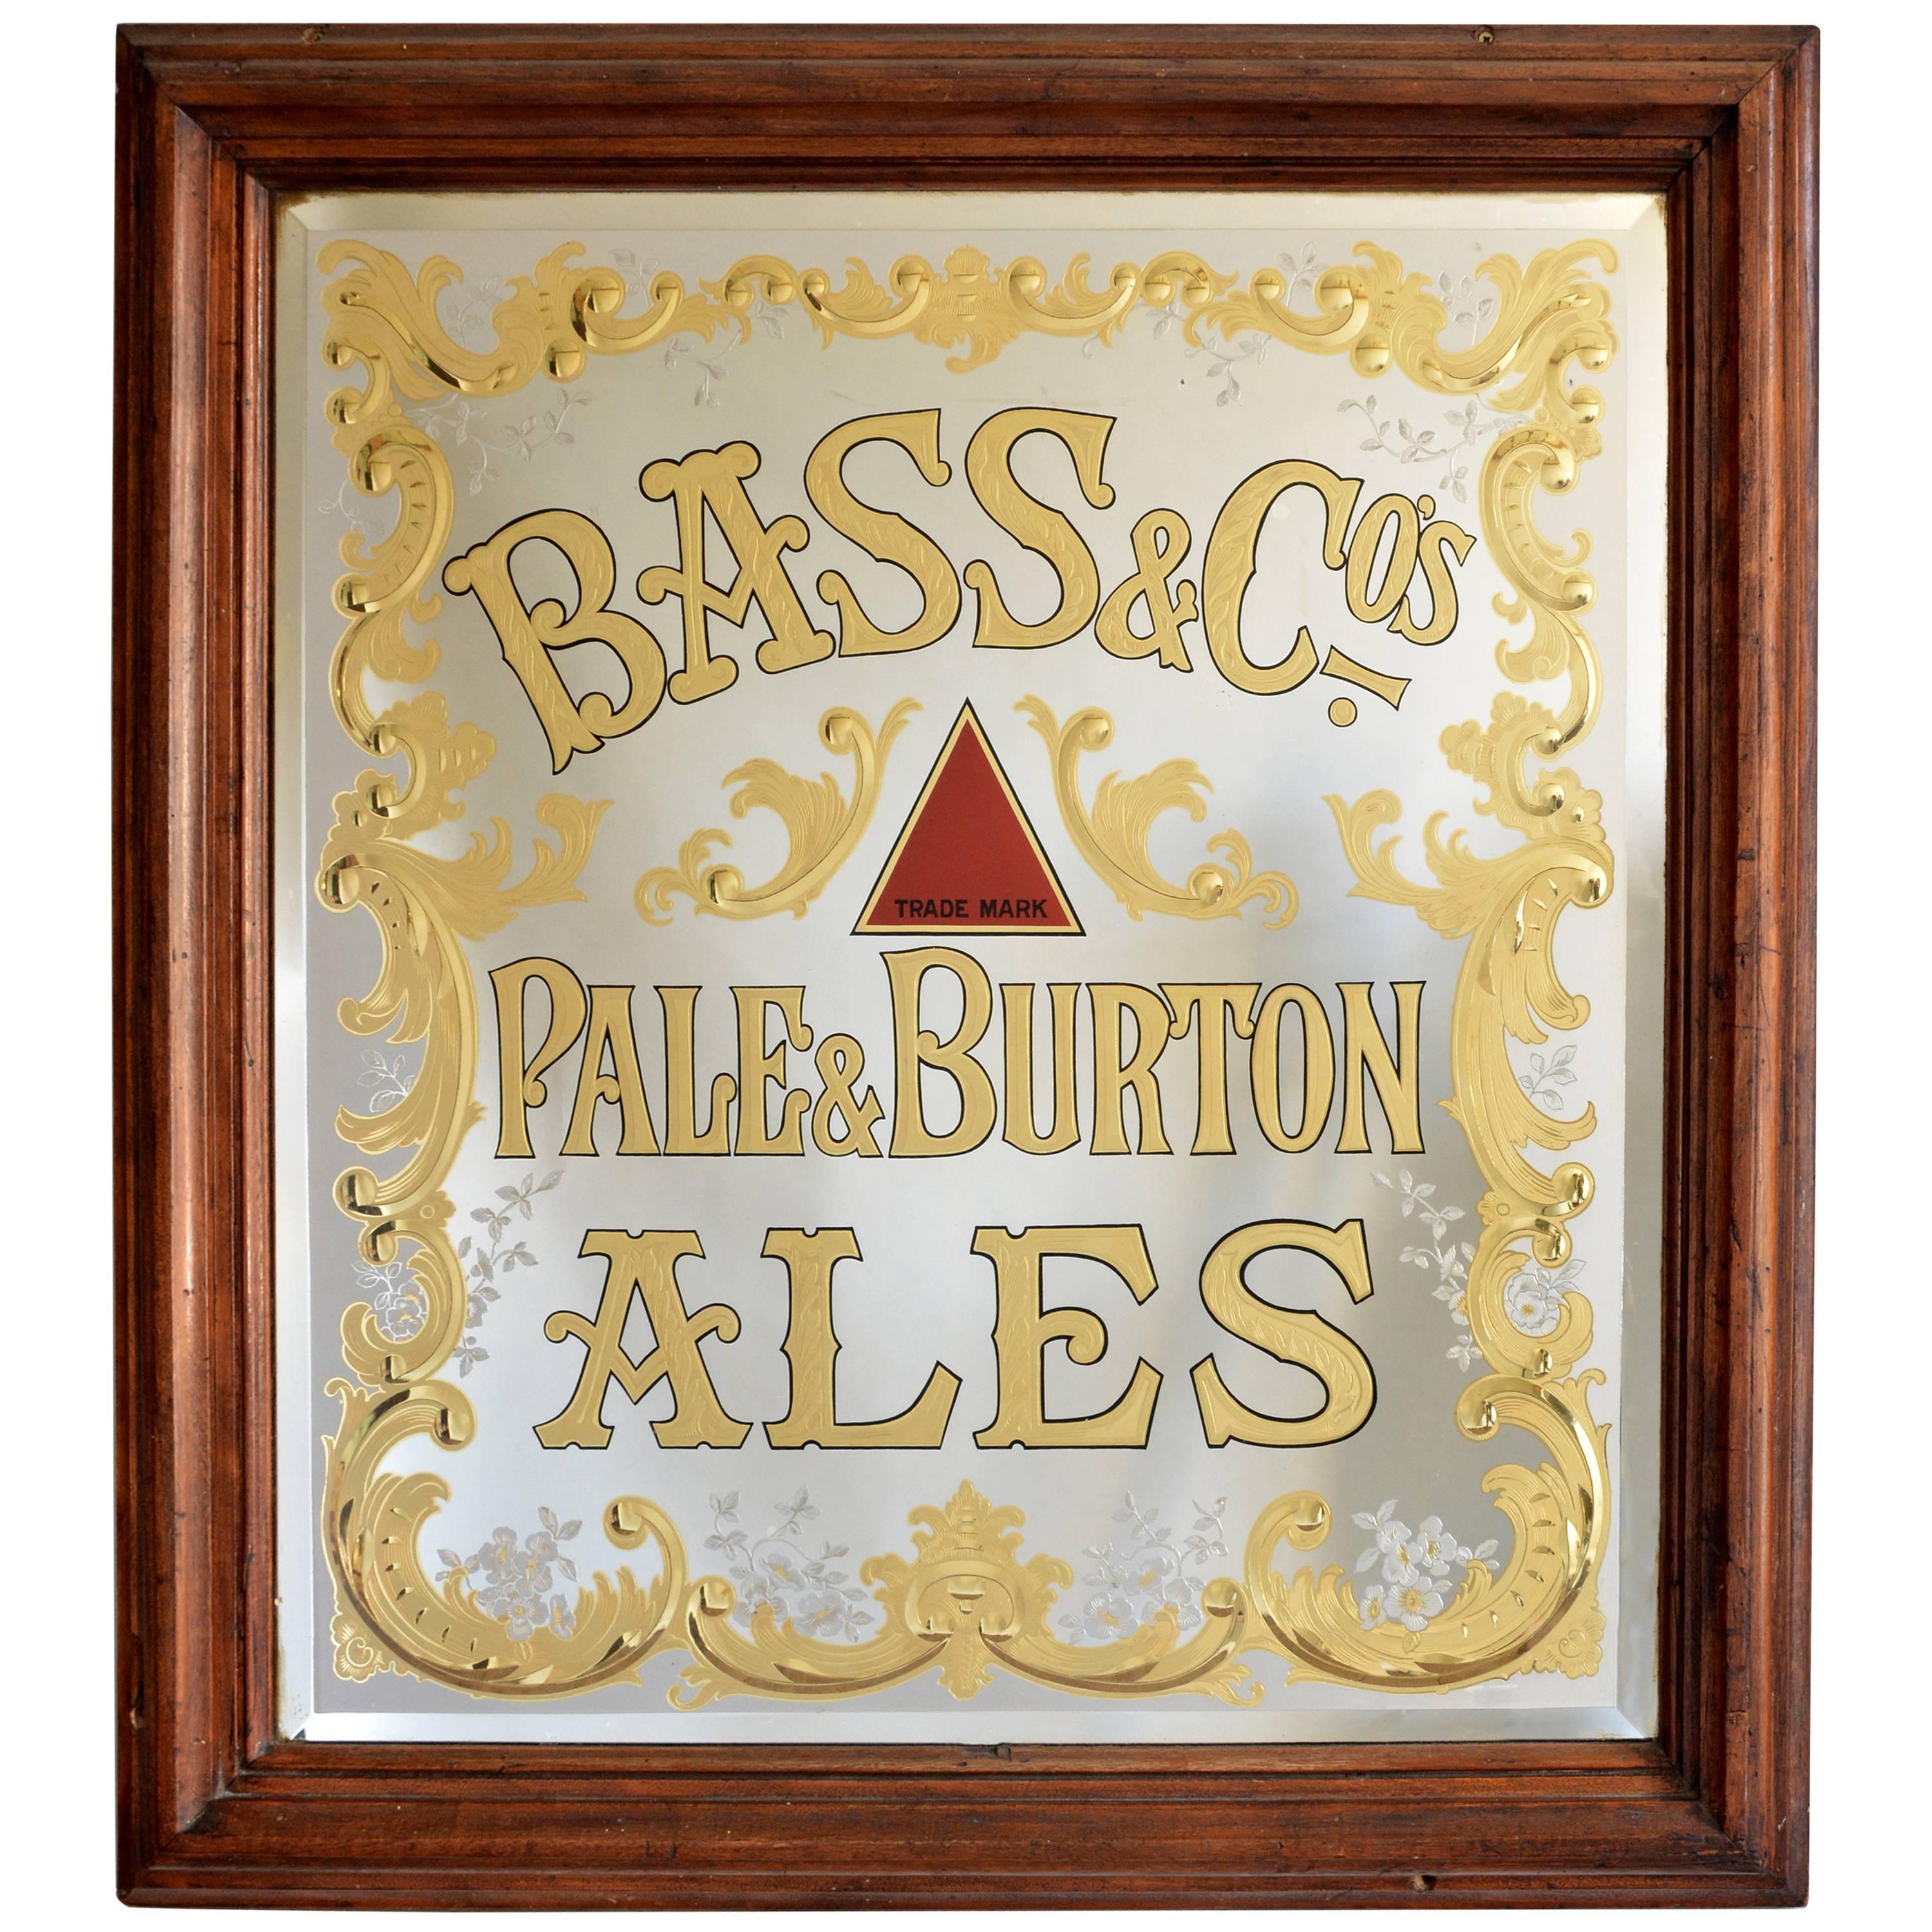 'Bass' Pub Mirror